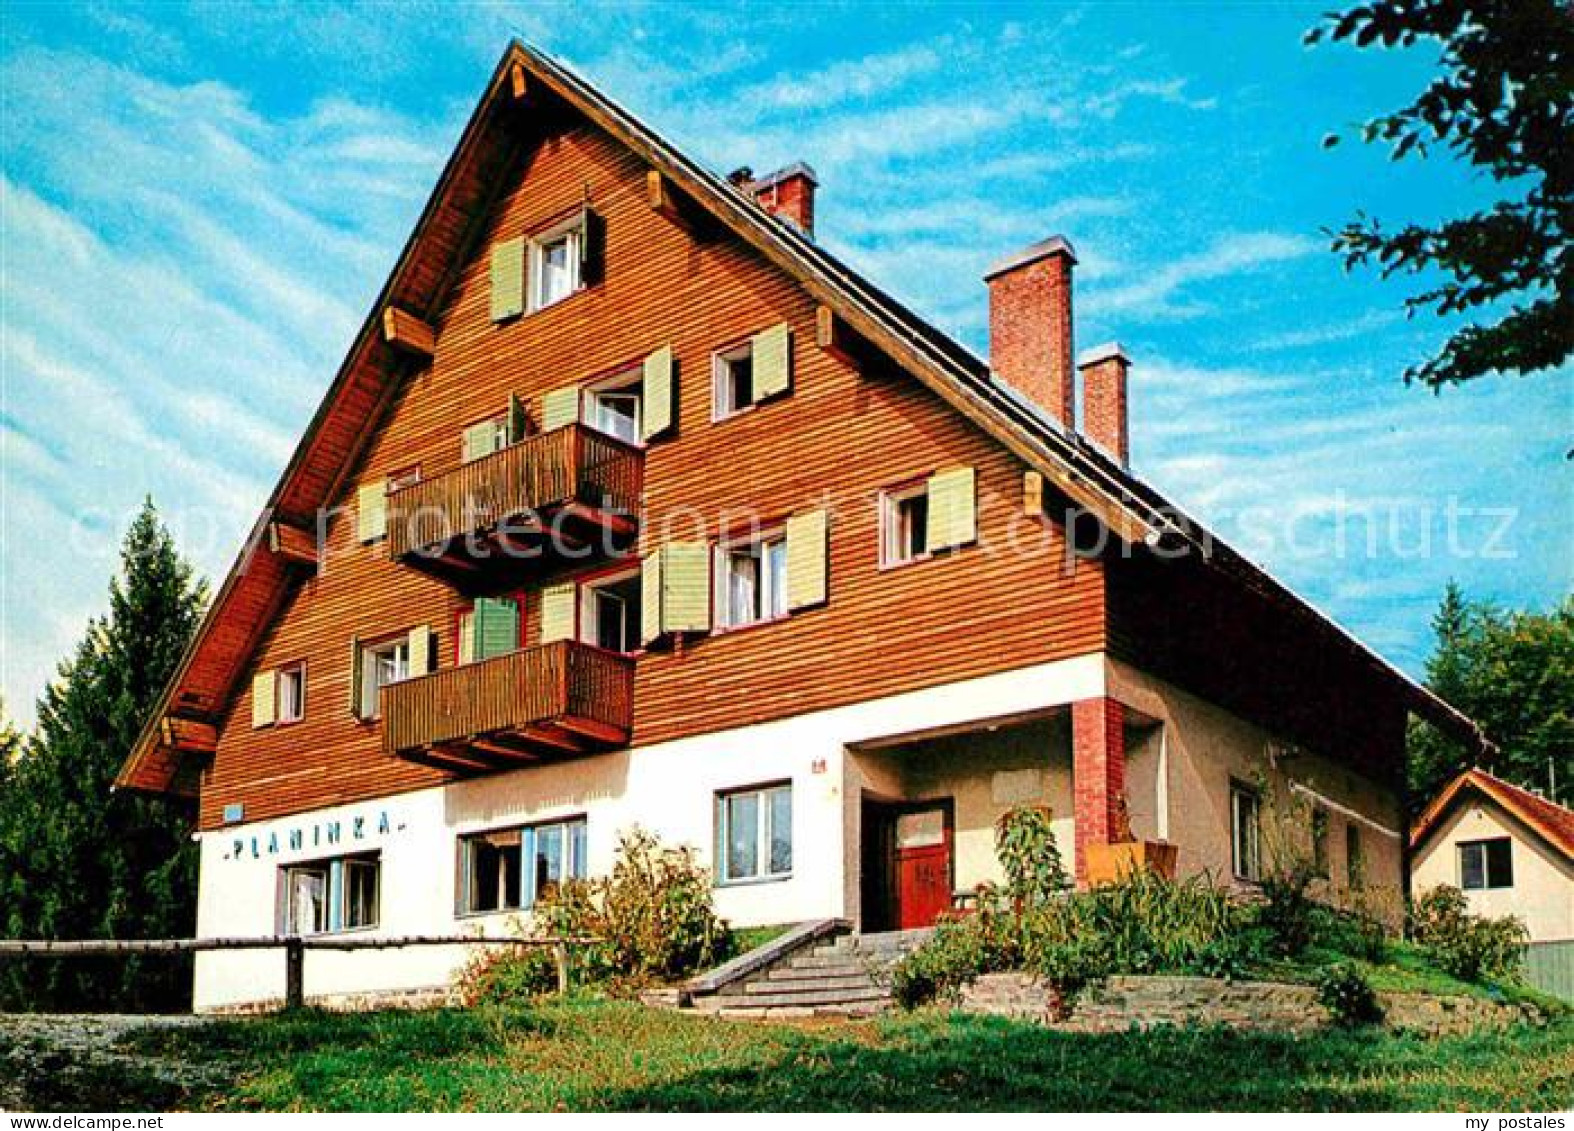 72649176 Slowenien Villa Planinka Pohorje Raster Huette Im Bachergebirge  Slowen - Slovenia